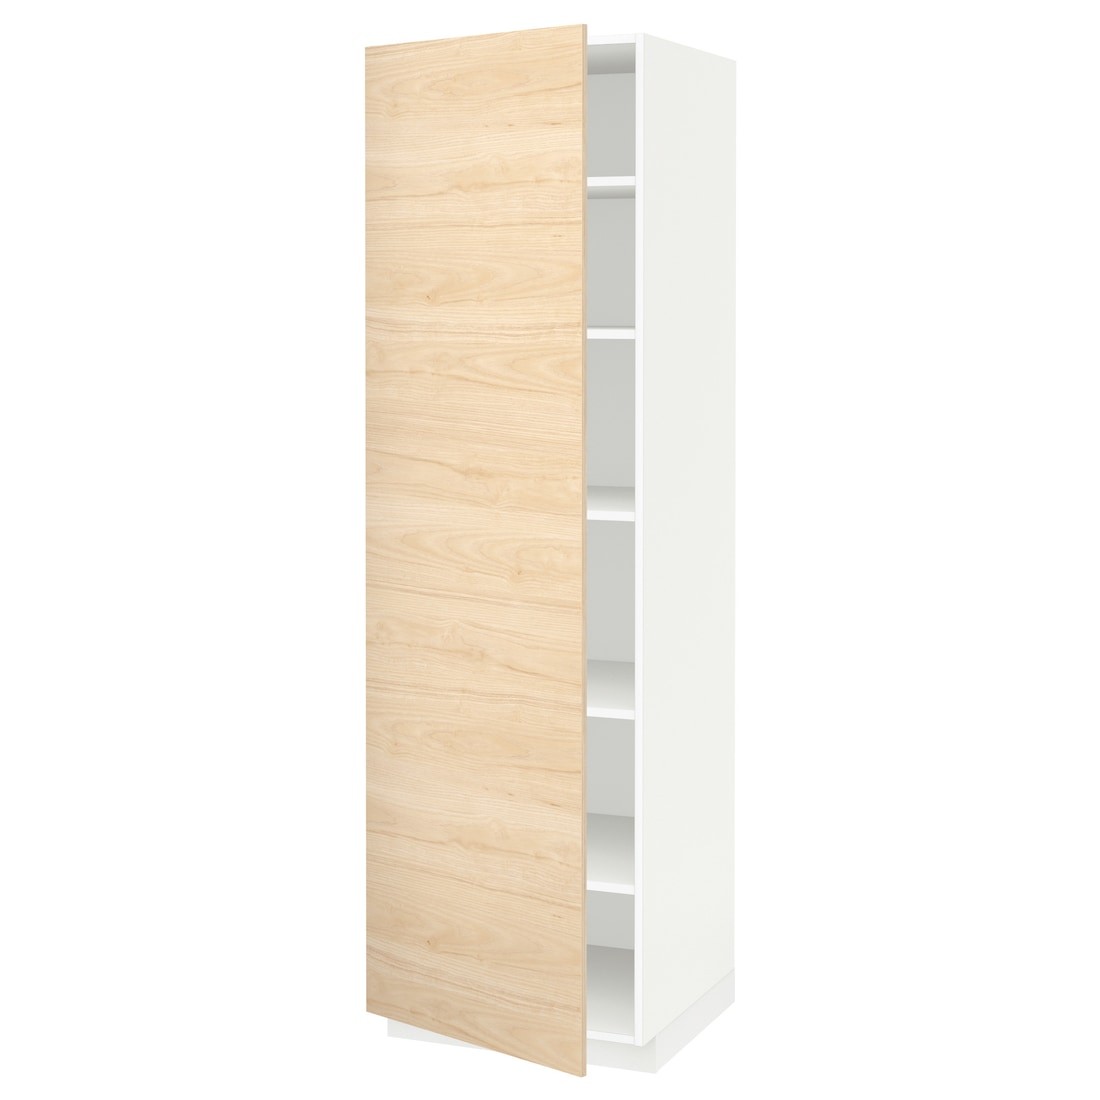 IKEA METOD МЕТОД Высокий шкаф с полками, белый / Askersund узор светлый ясень, 60x60x200 см 39462146 394.621.46